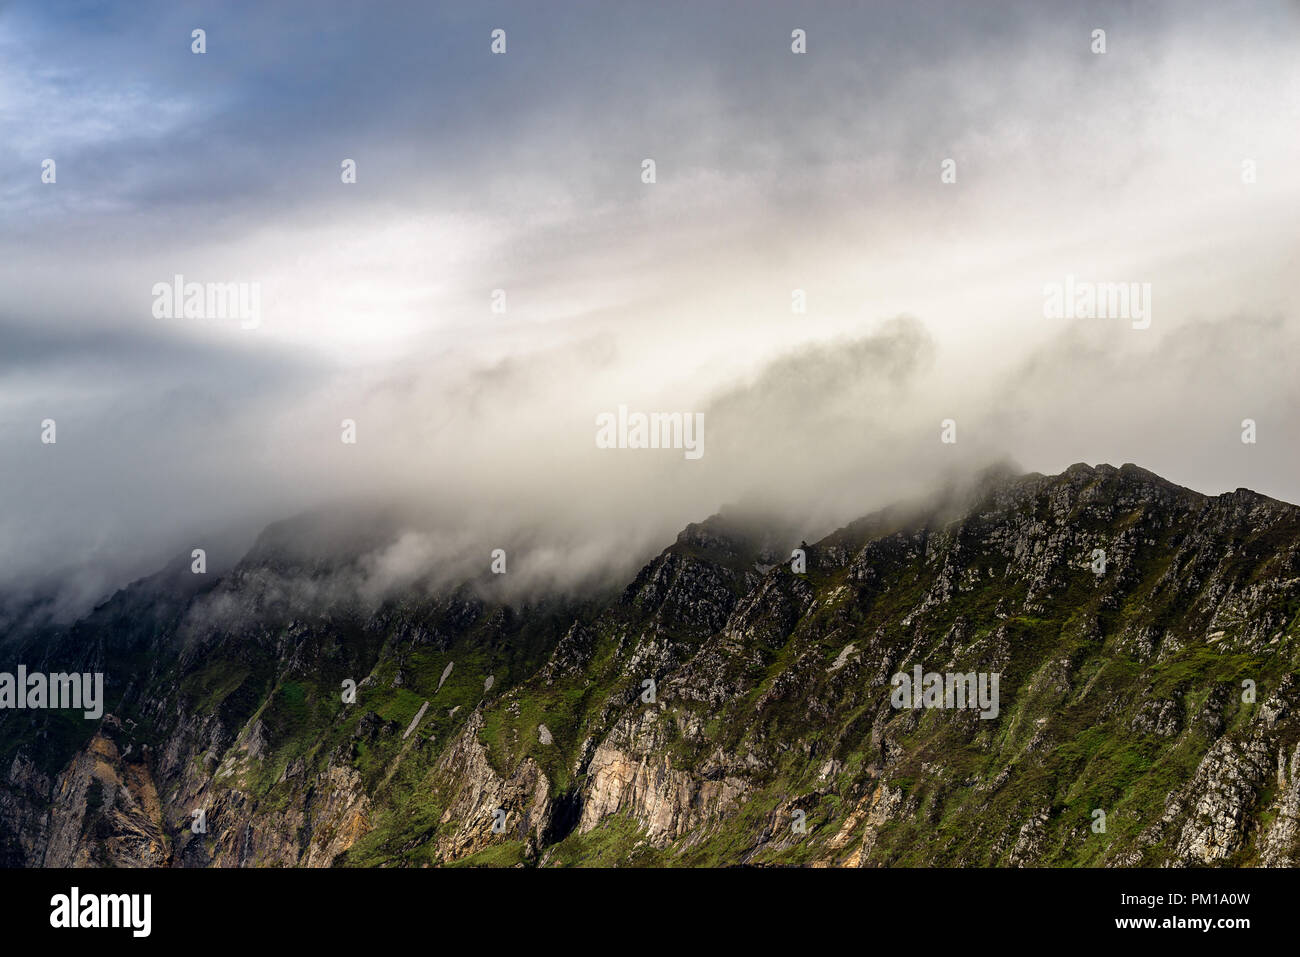 Splendida vista della montagna Slieve League coperta di nuvole e nebbia, dall'alto sulla costa atlantica della contea di Donegal, Irlanda Foto Stock